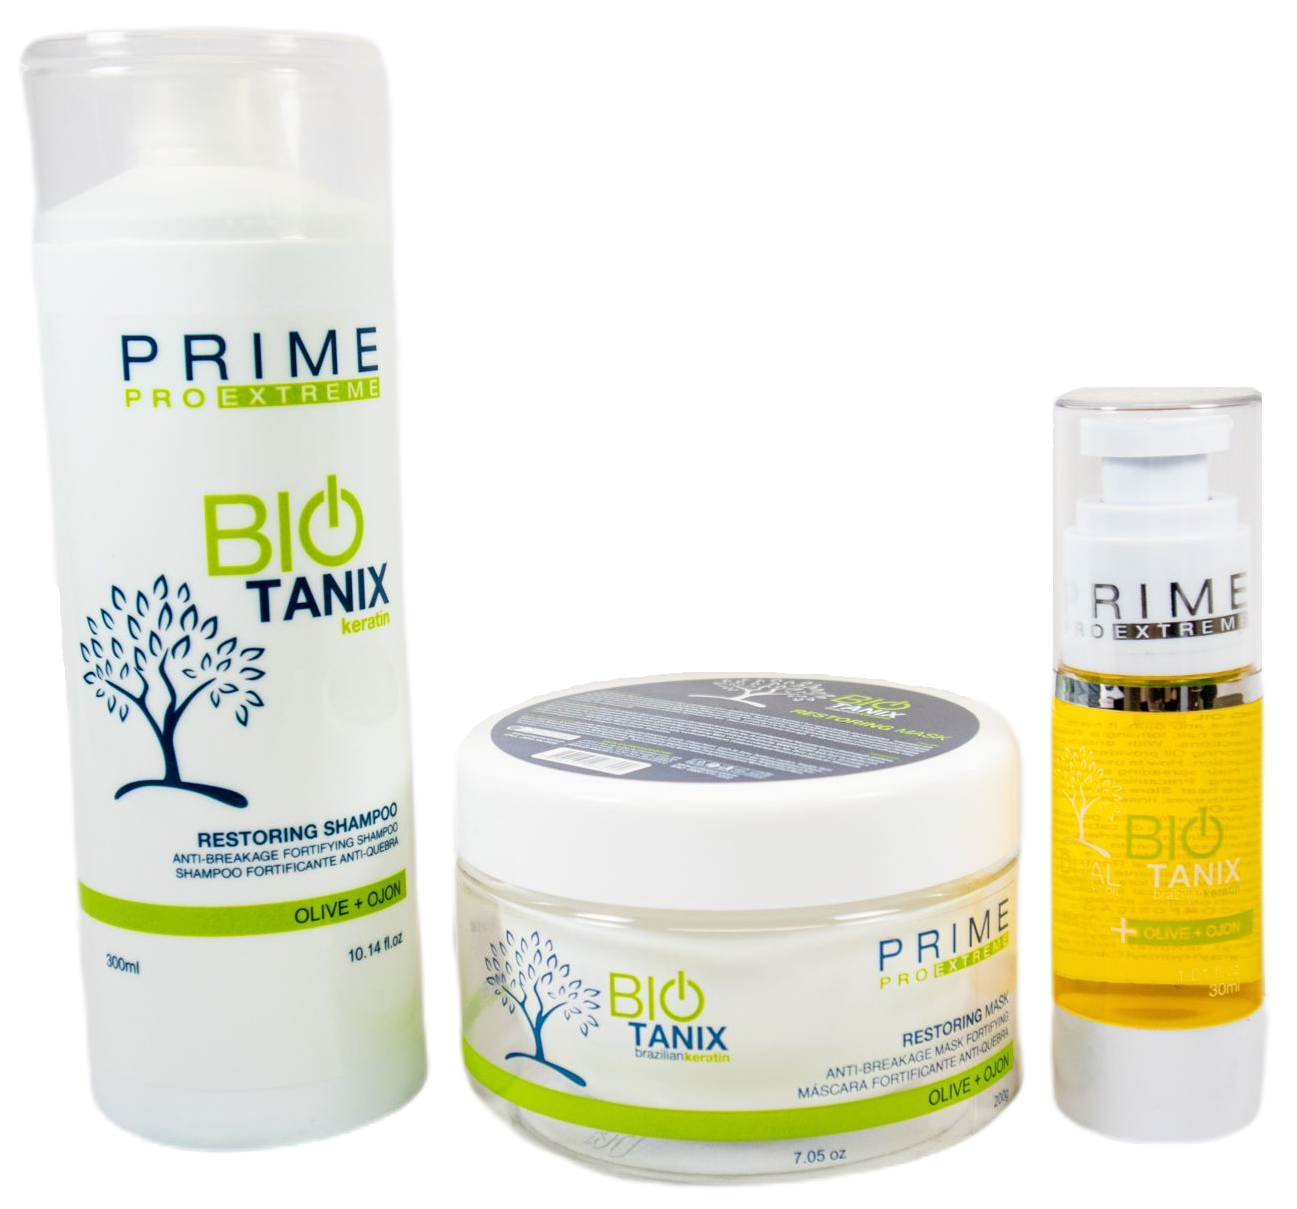 Prime Pro Extreme Hair Treatment Bio Tanix Restoring Hair Treatment Kit 3 Products - Prime Pro